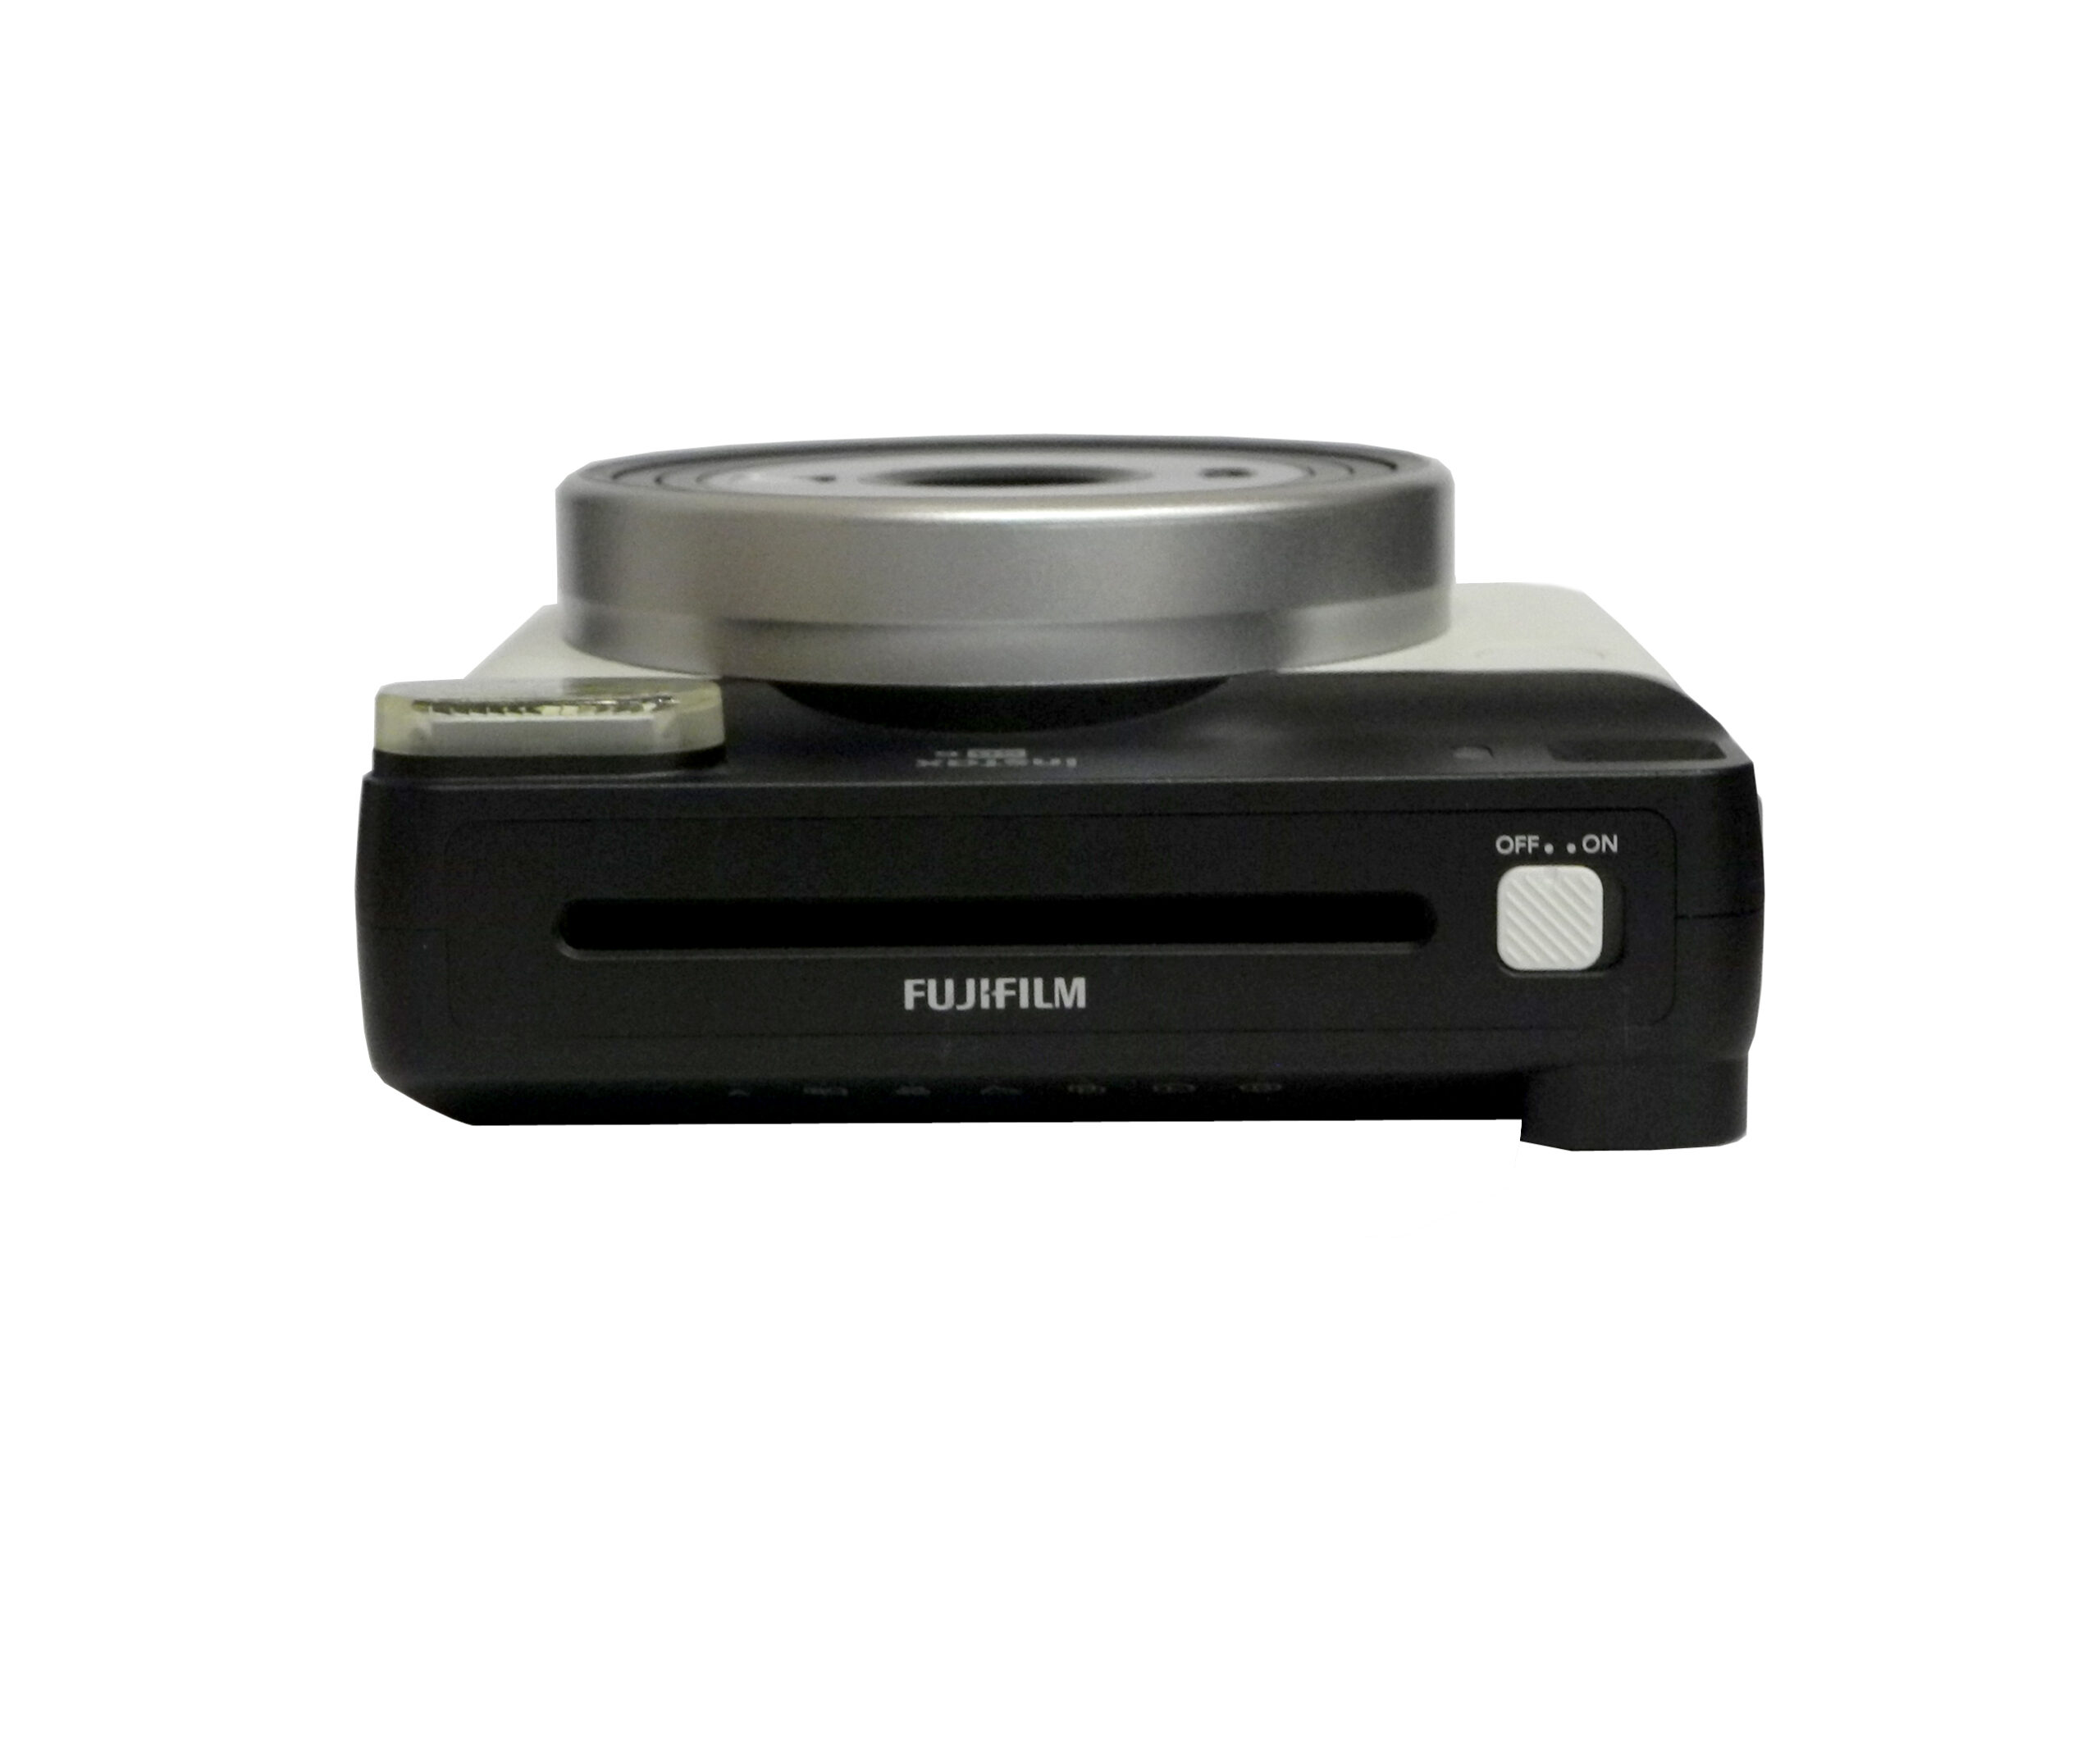 Aparat Fujifilm Instax Square SQ6 Pearl White powystawowy